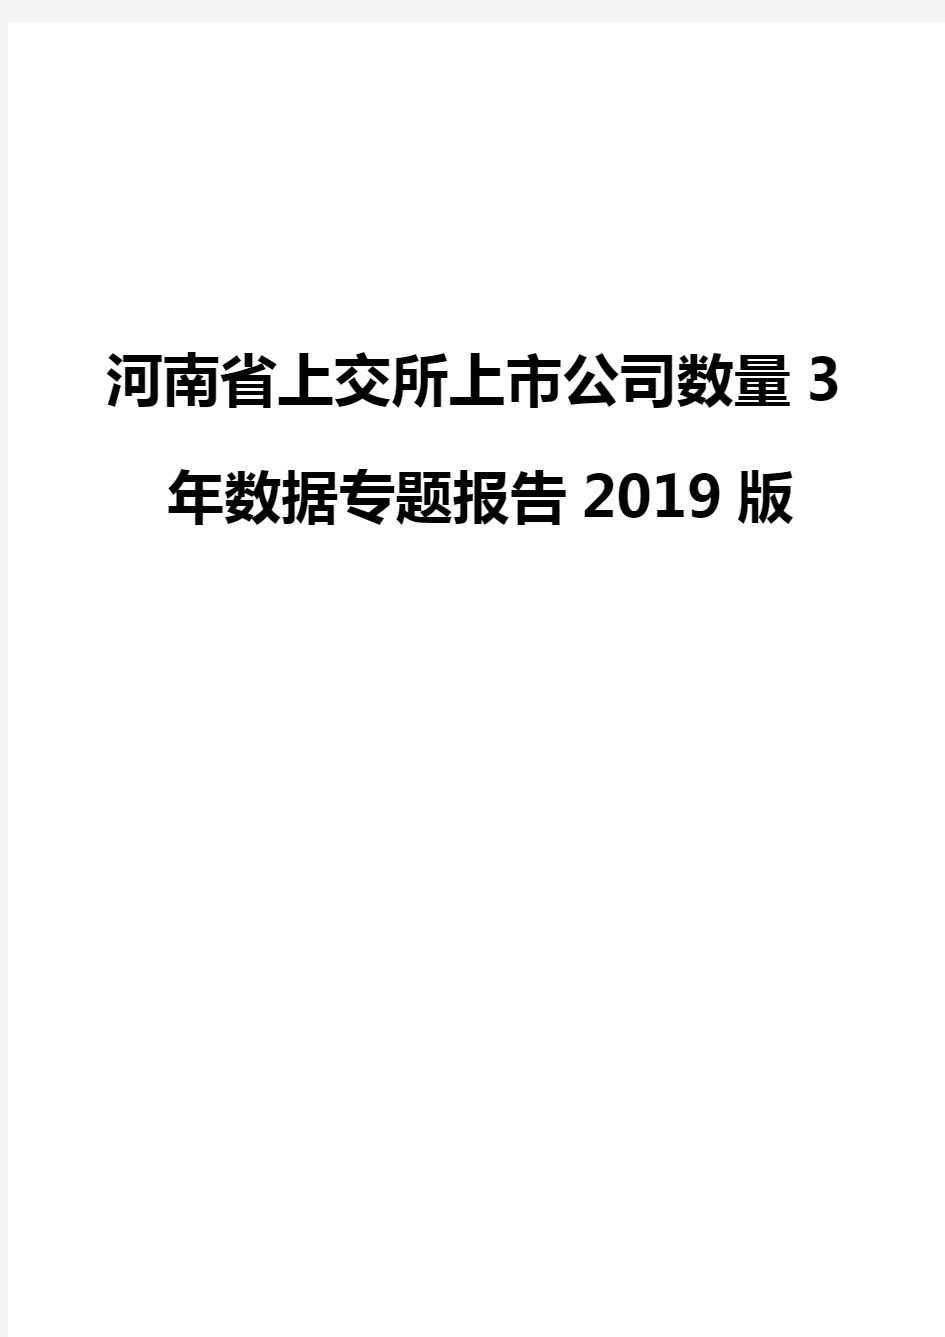 河南省上交所上市公司数量3年数据专题报告2019版